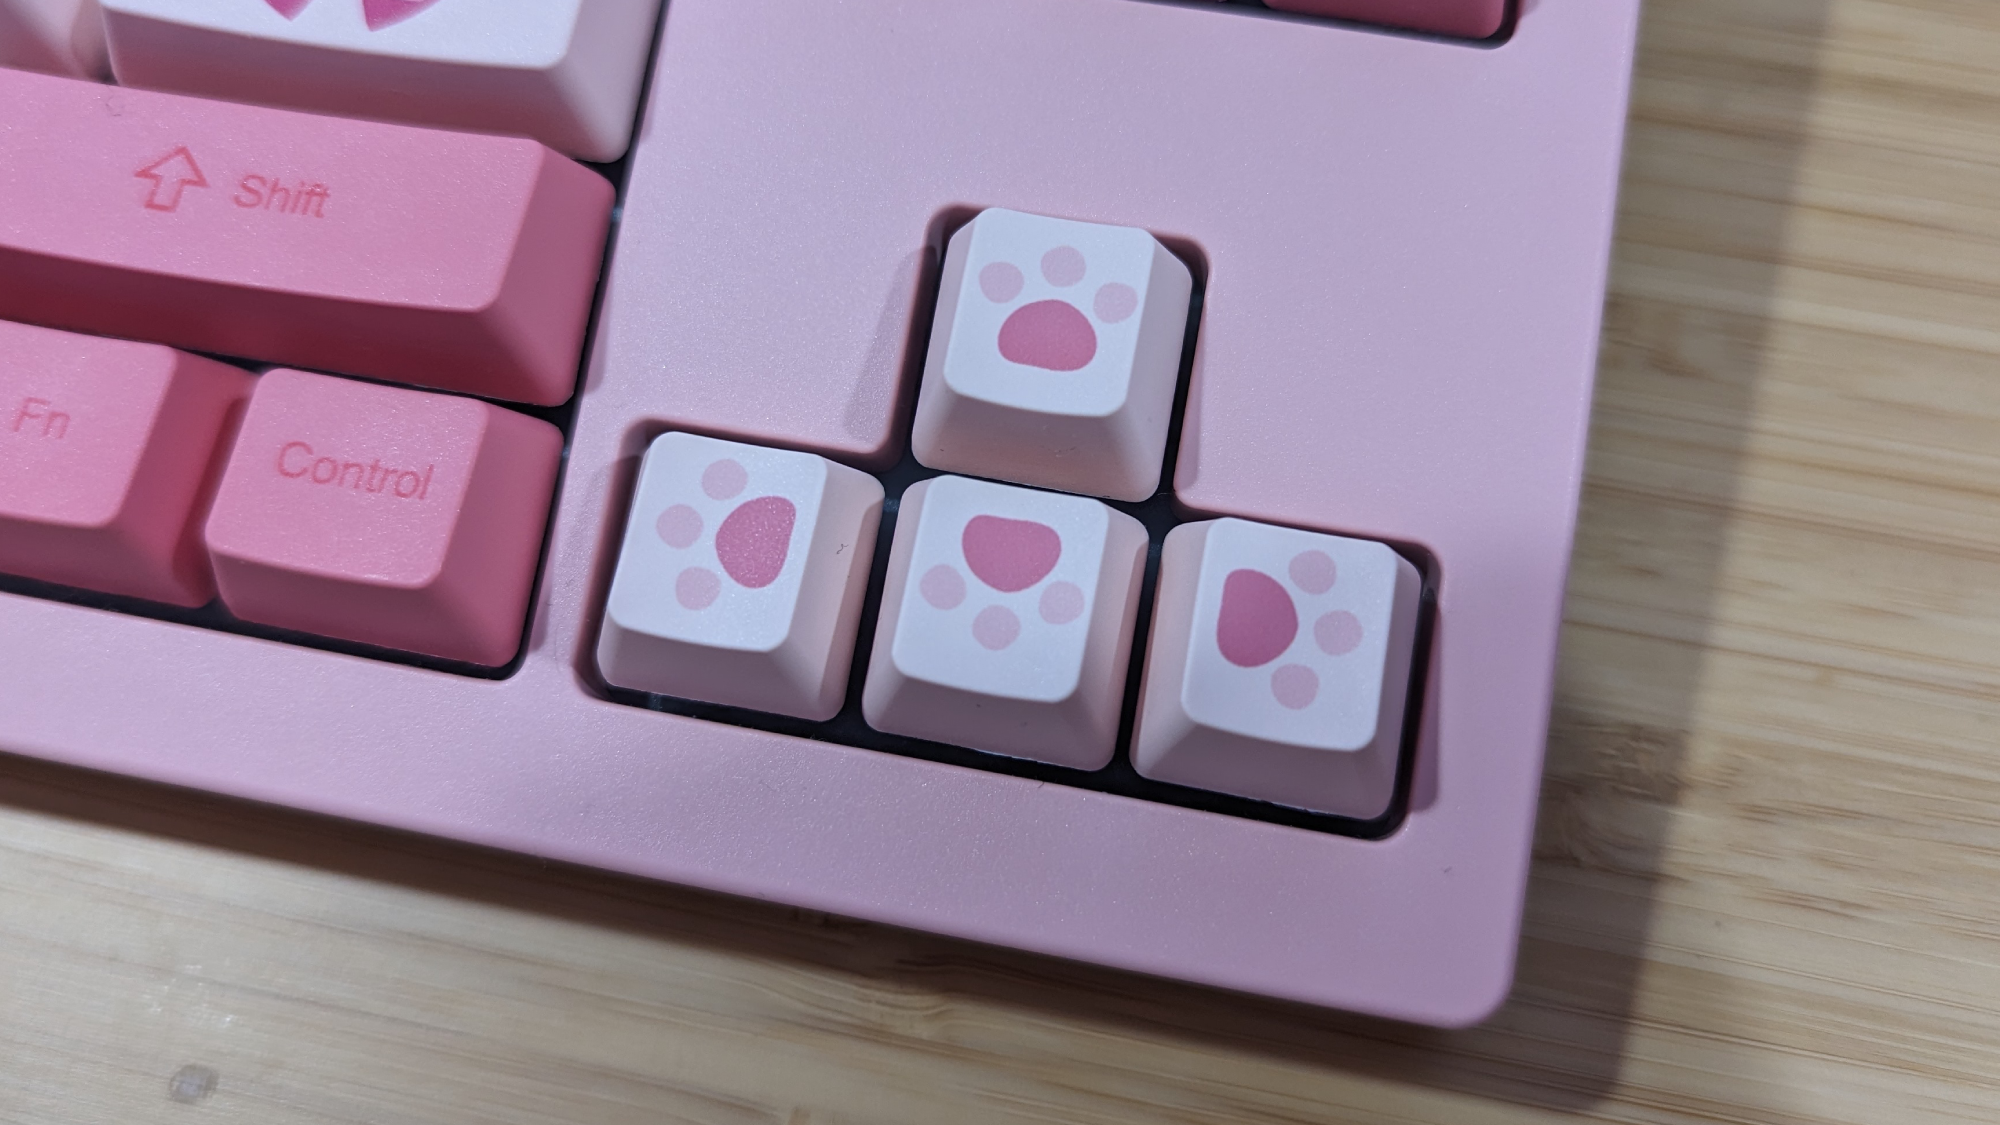 Sailor Moon Crystal Keyboard